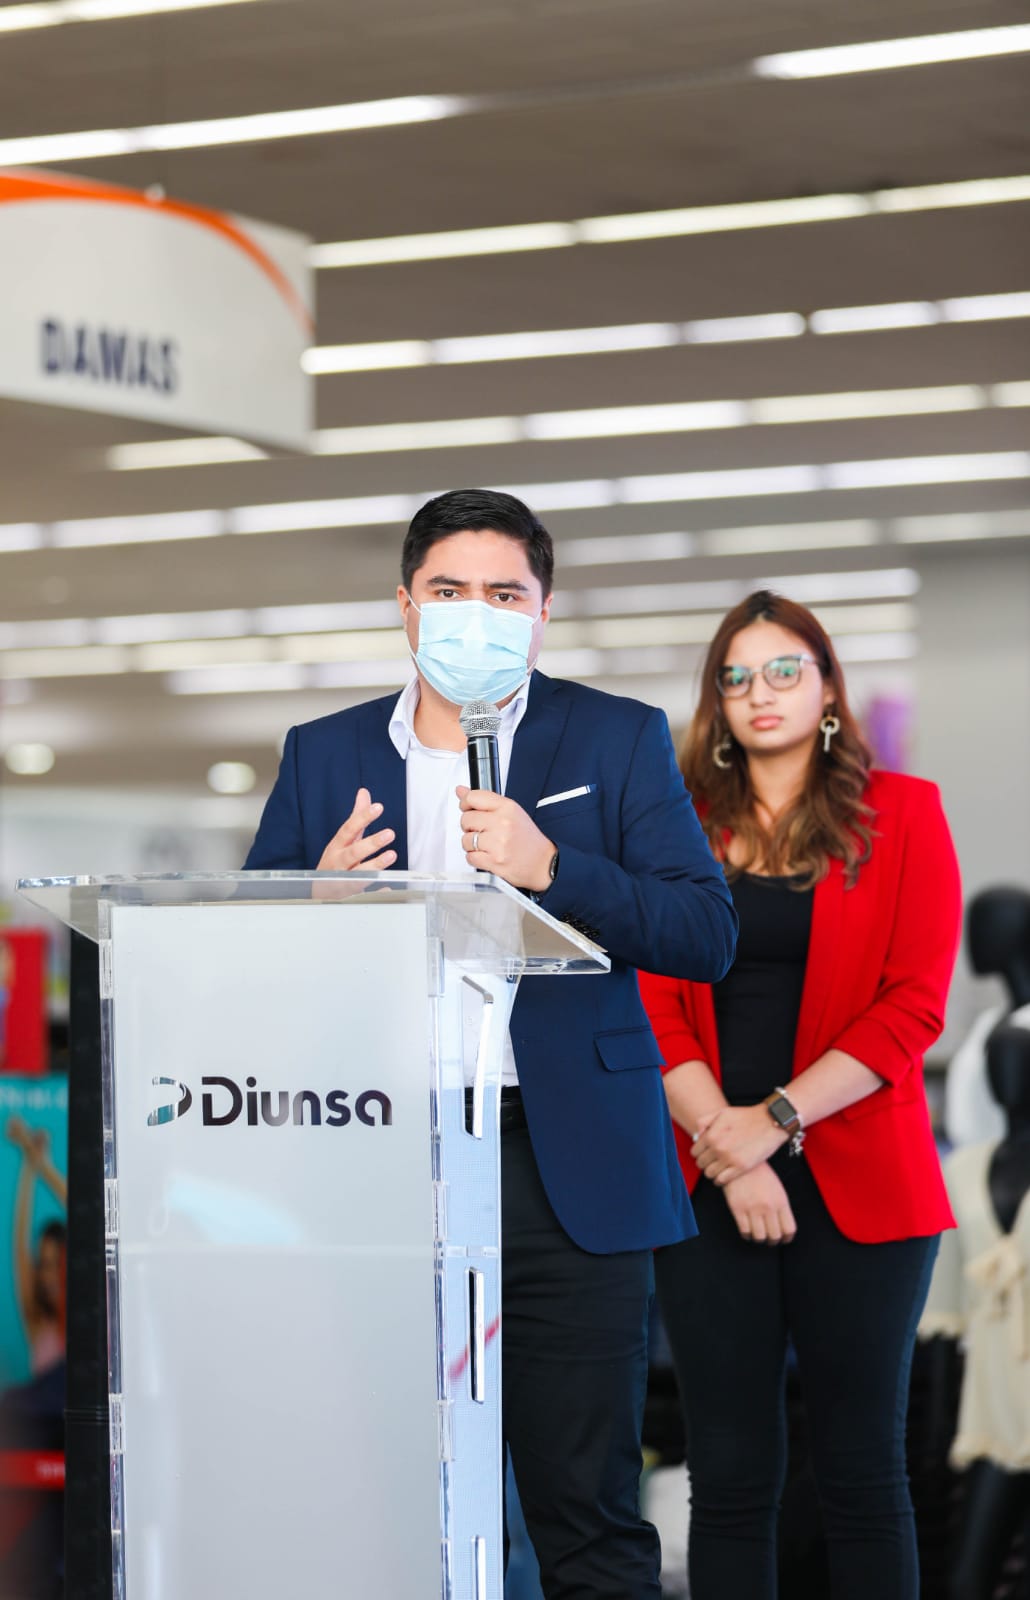 Nueva tienda Diunsa en San Pedro Sula se ubicará en Plaza Universal